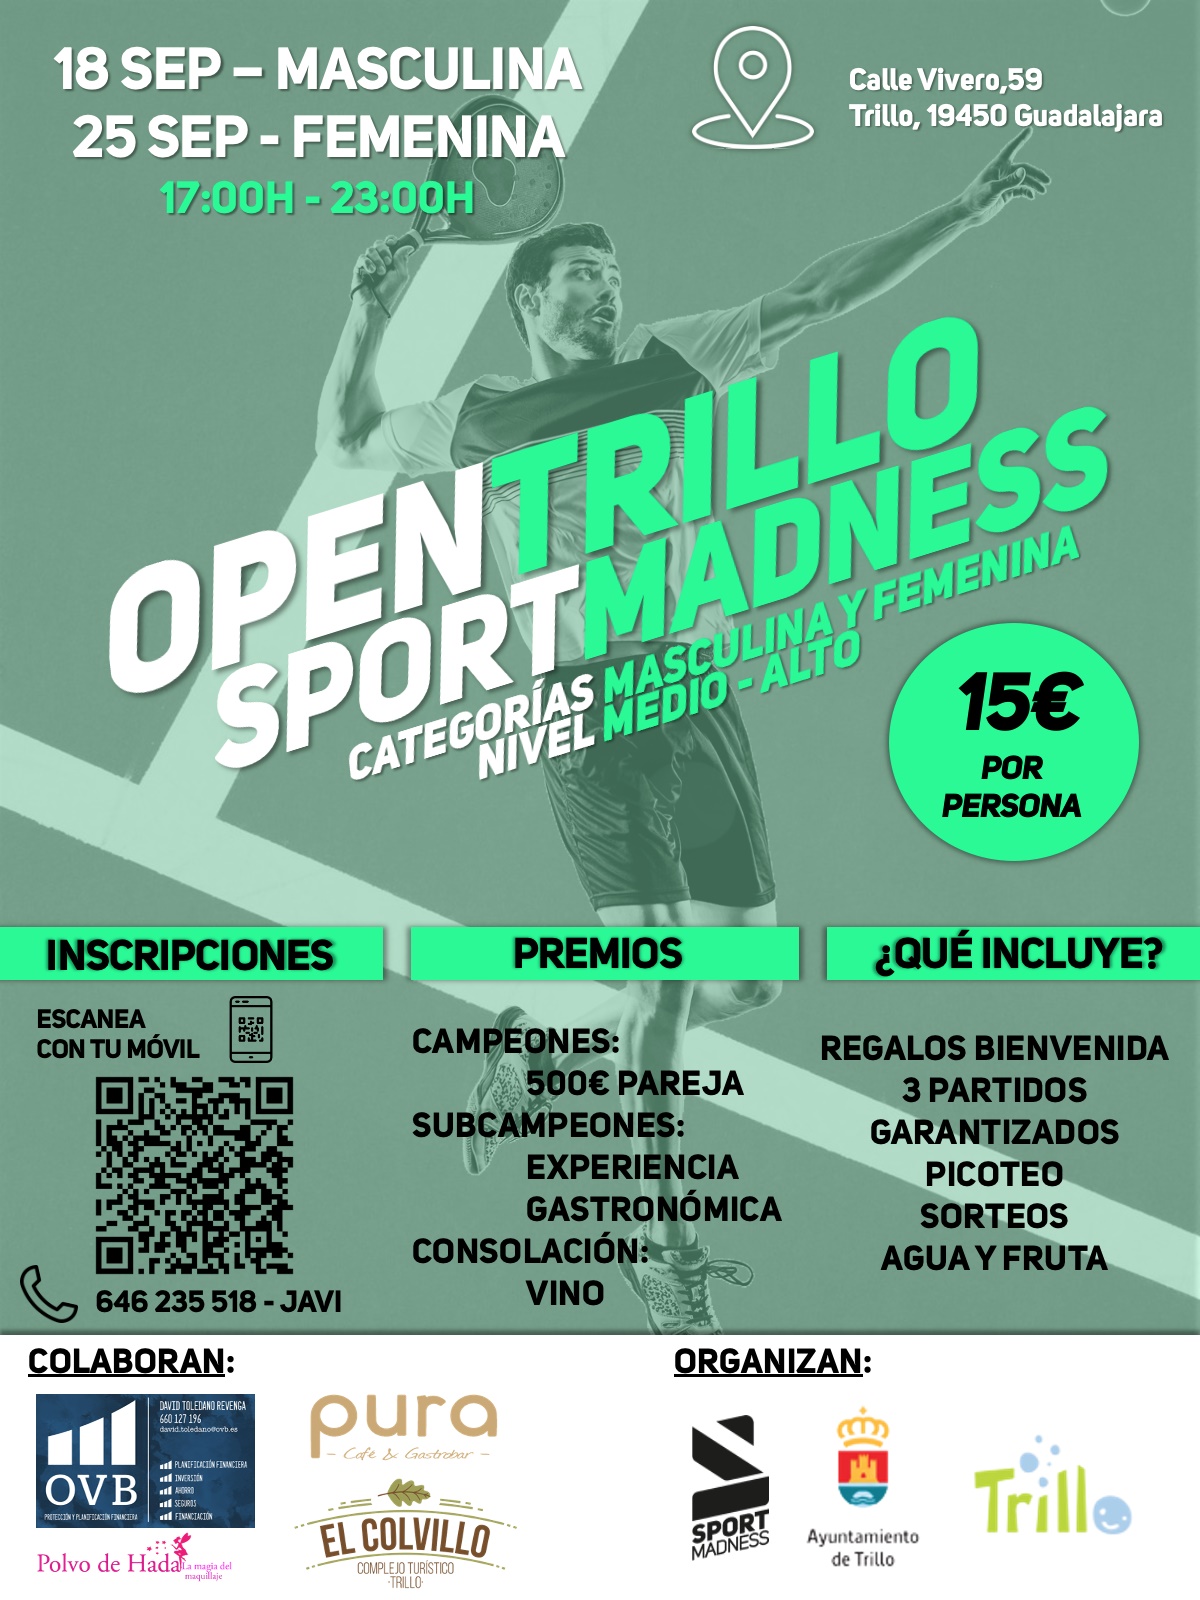 Torneo Sportmadness Guadalajara